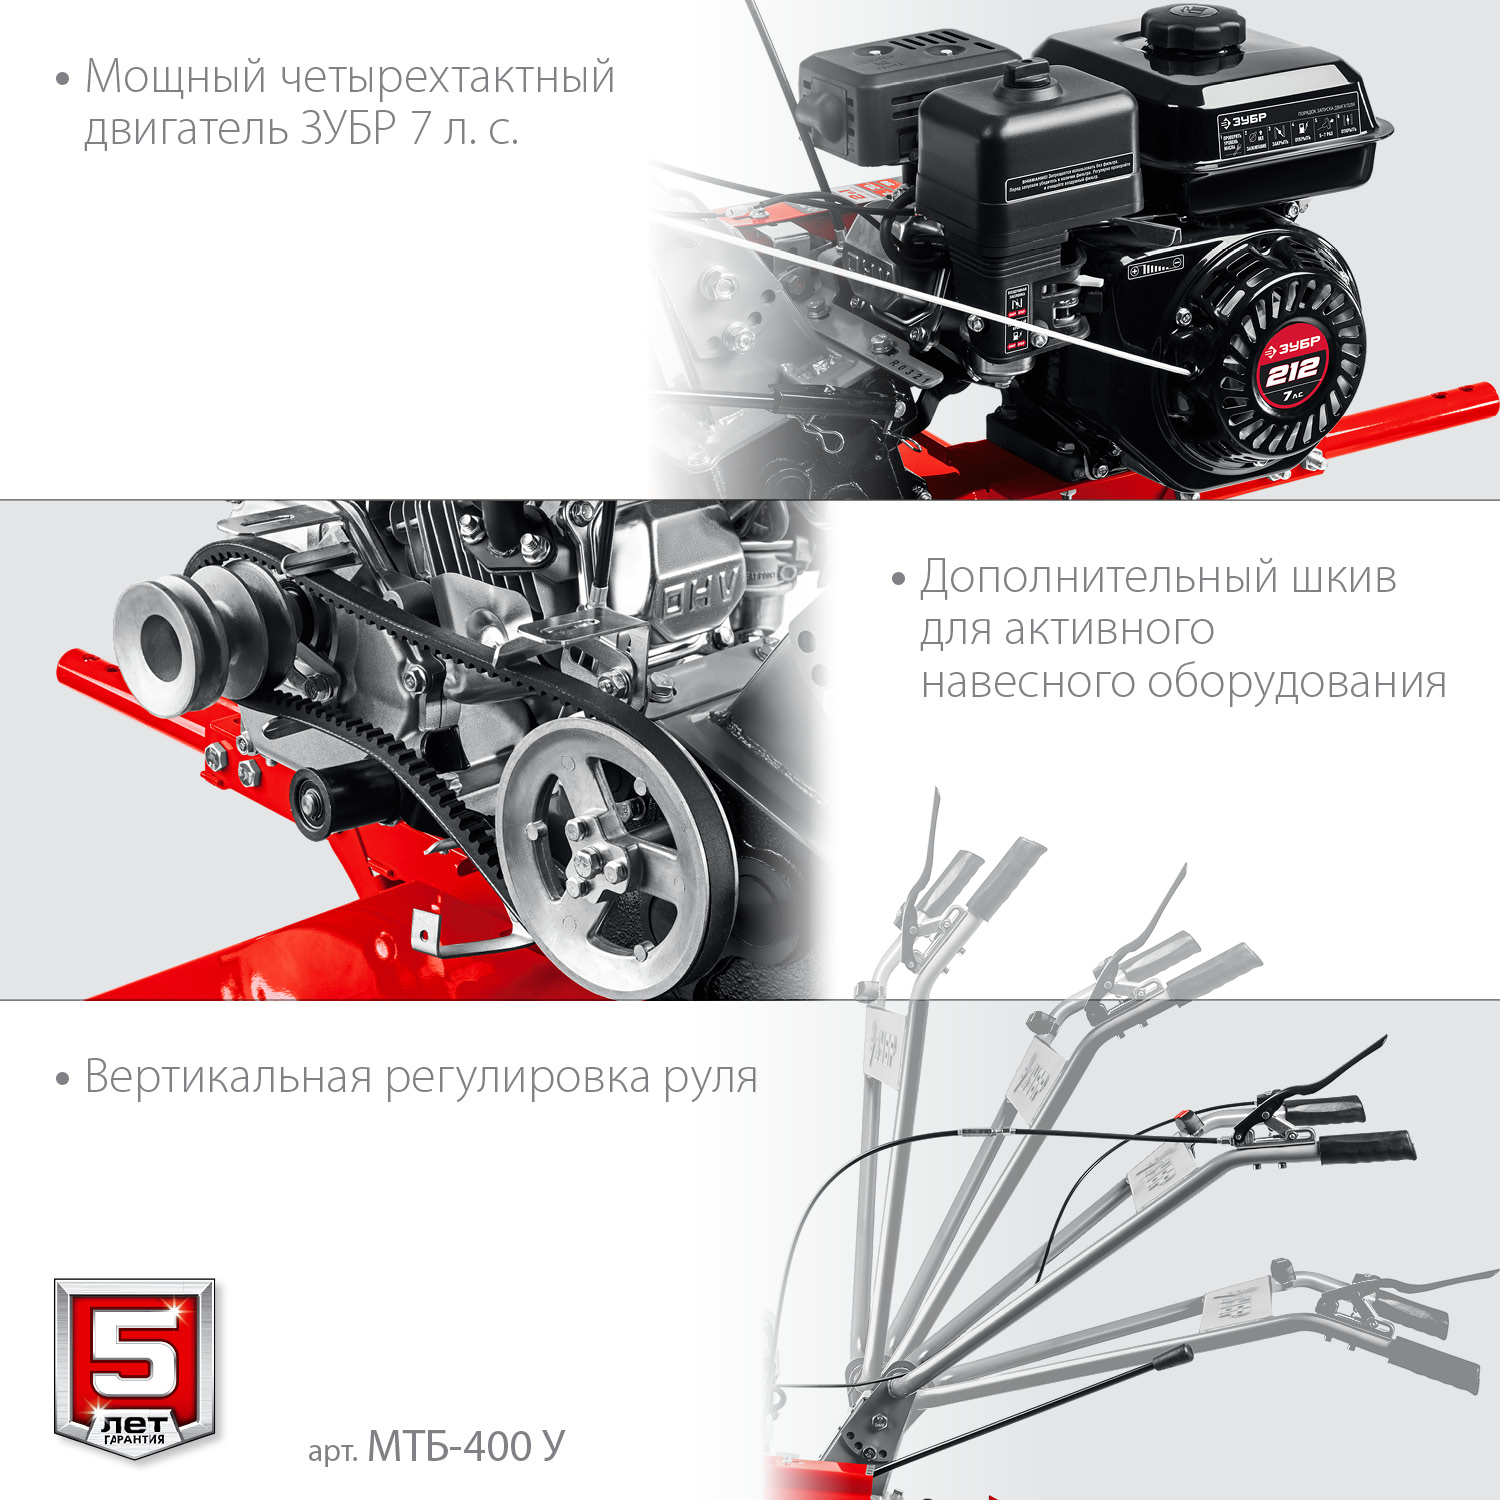 ЗУБР увеличенные колеса, 7 л.с., мотоблок с понижающей передачей (МТБ-400 У)